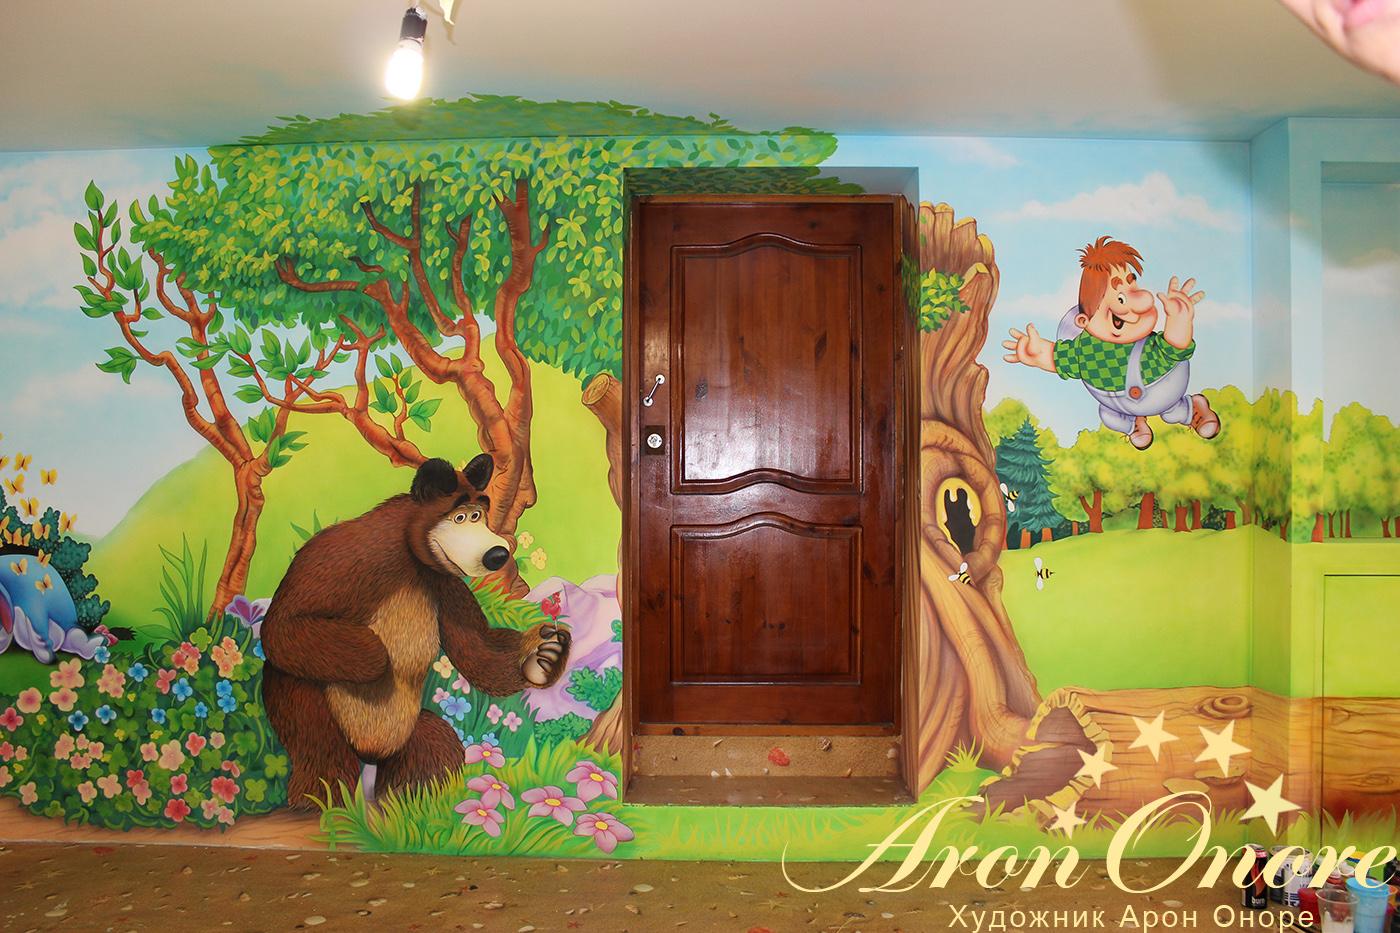 Сказочный рисунок на стене медведь вместе с карлсоном на фоне сказочного леса